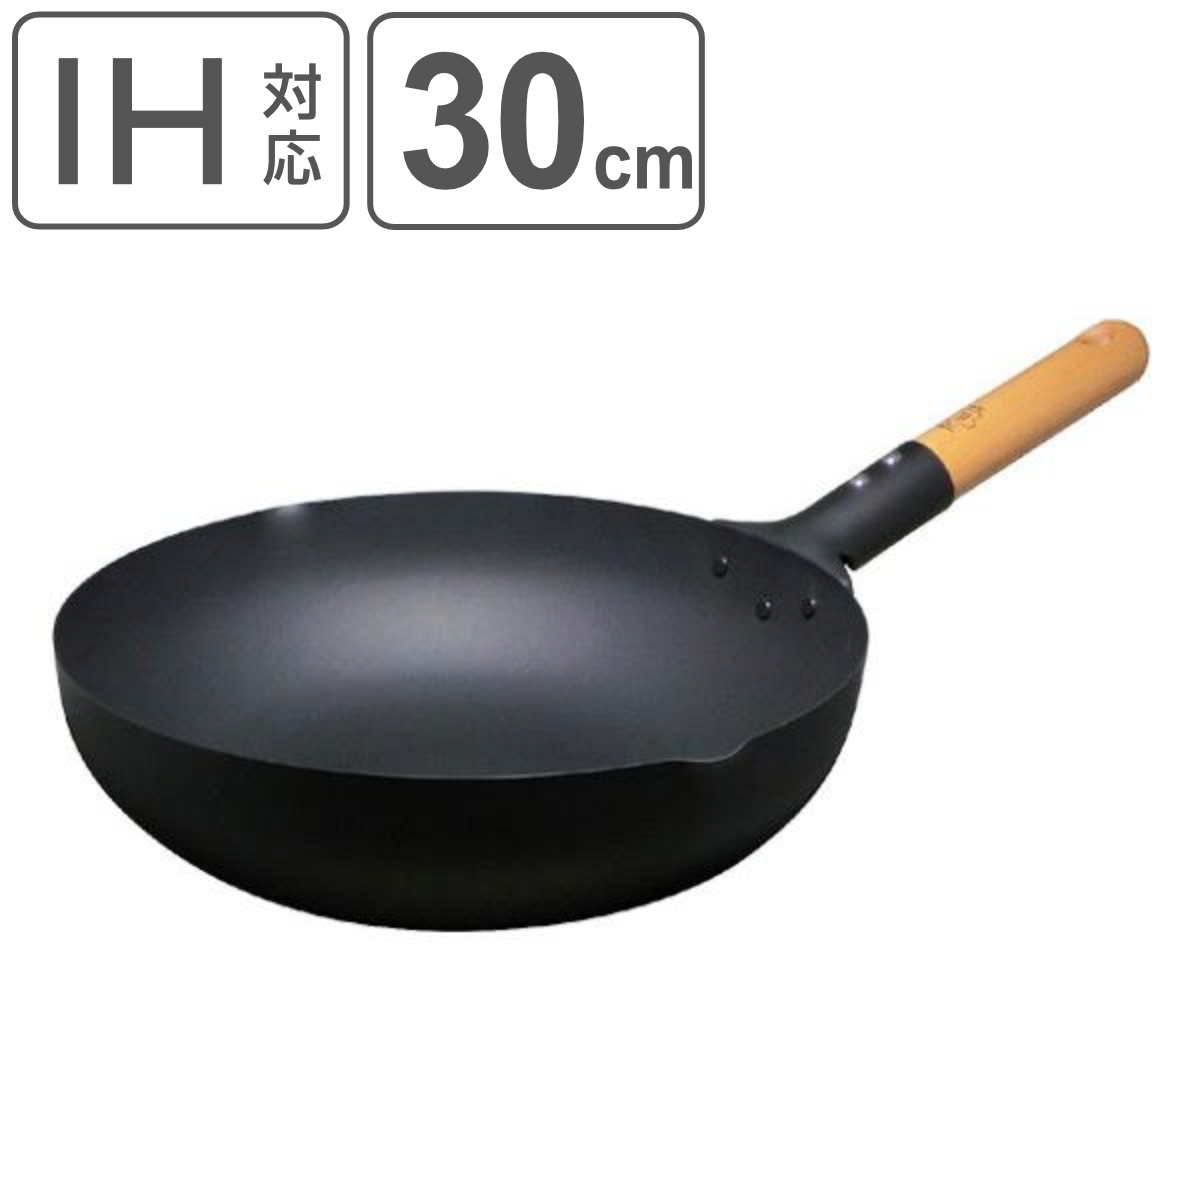 鉄フライパン 30cm IH対応 匠 鉄製 マグマプレート 炒め鍋